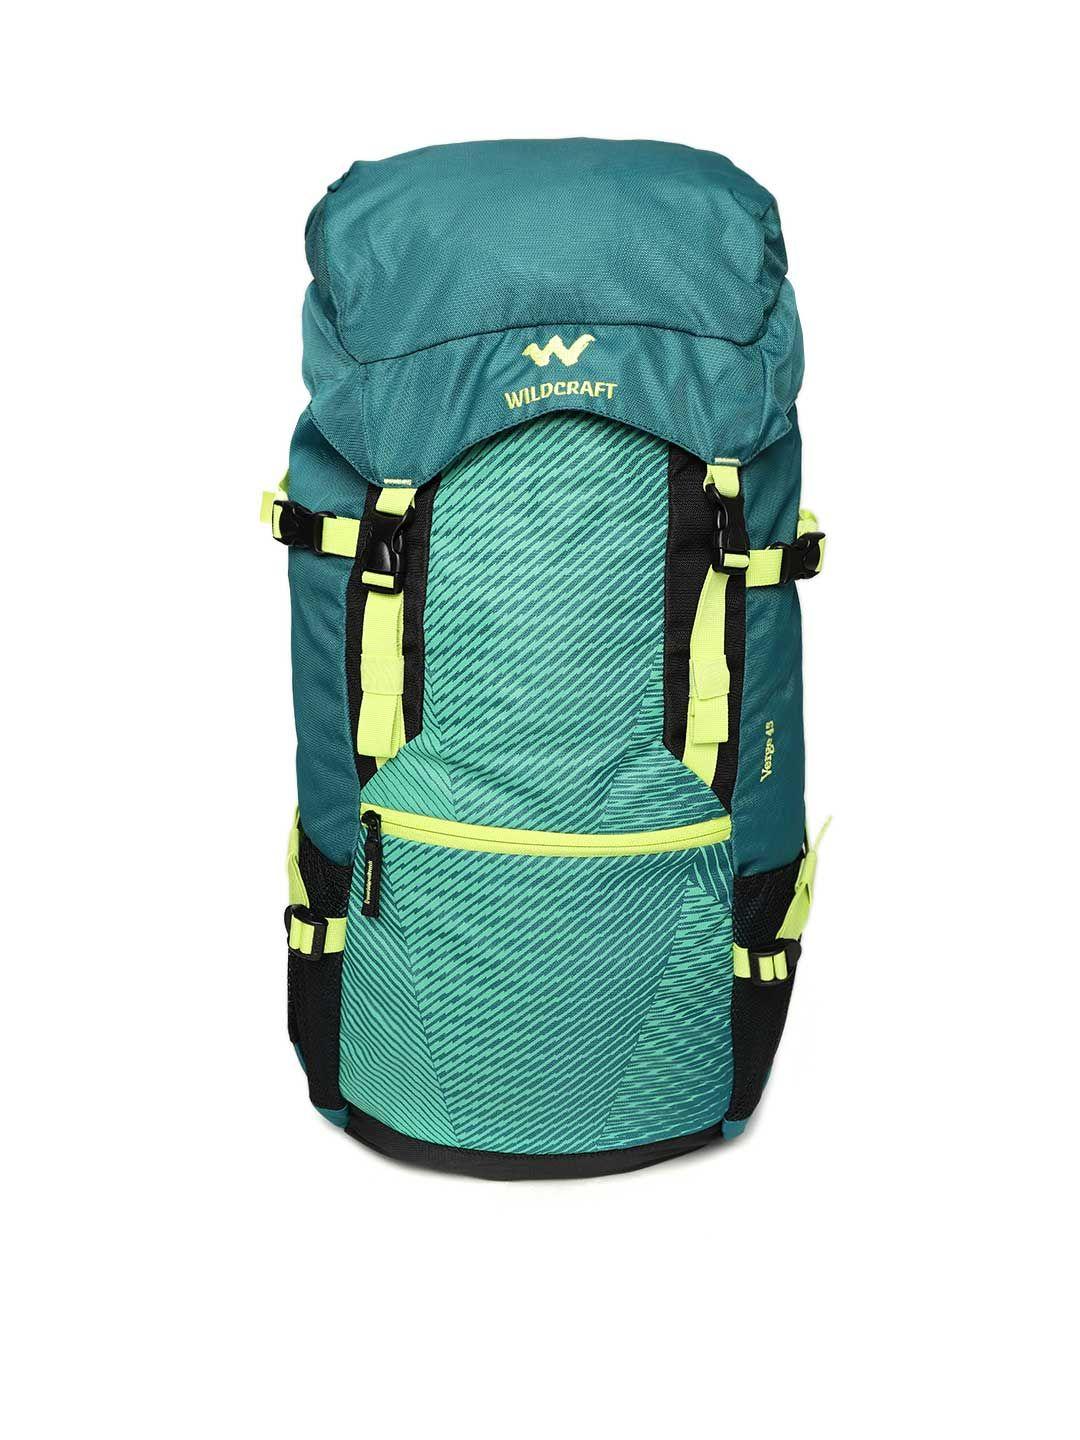 wildcraft unisex green verge 45 rucksack